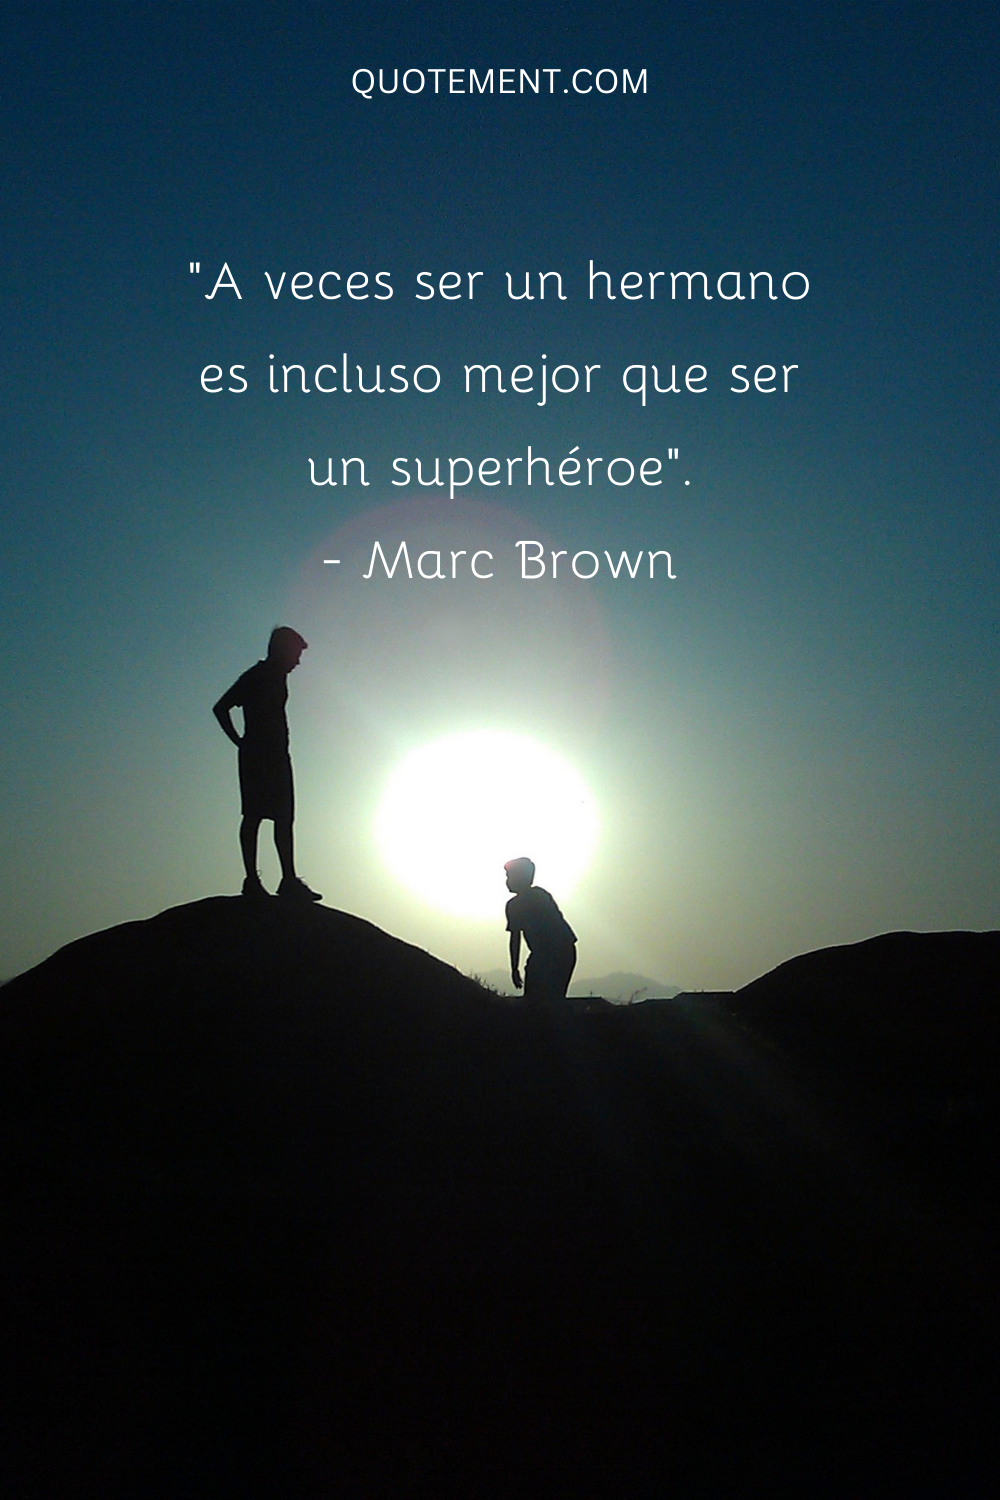 "A veces ser un hermano es incluso mejor que ser un superhéroe". - Marc Brown